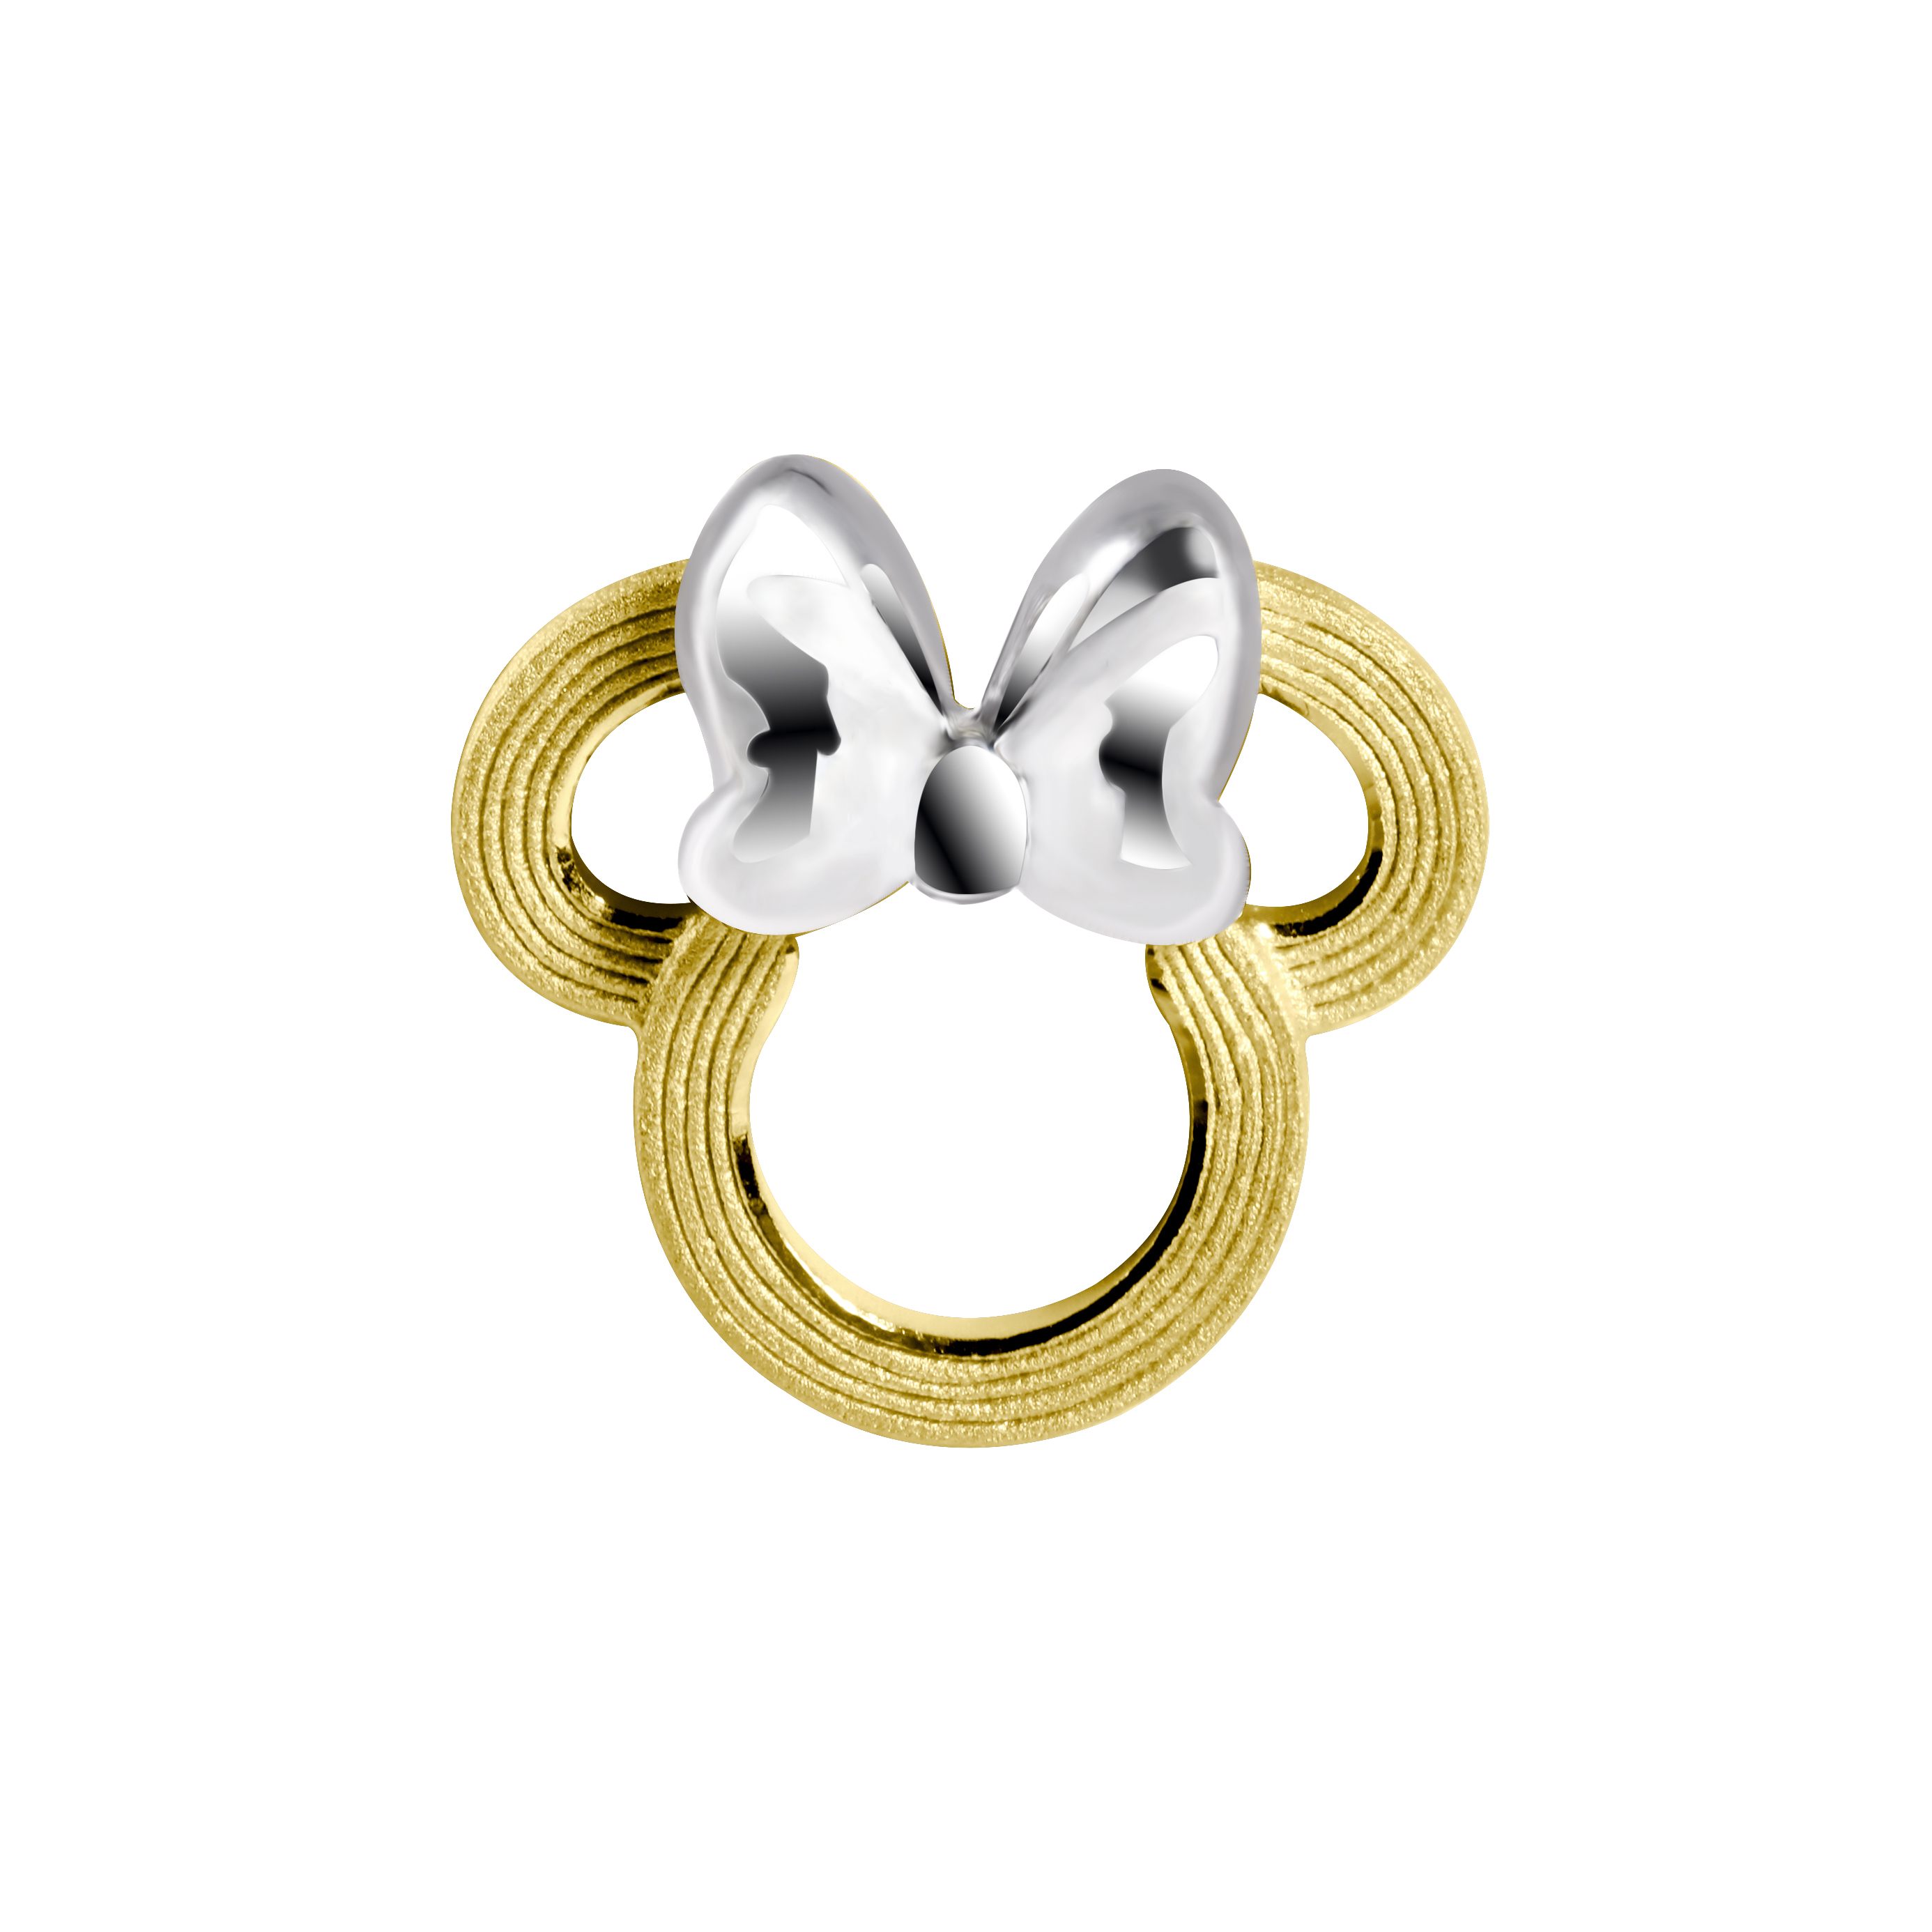 Prima Gold ต่างหูทองคำ 99.9% รูป Minnie Mouse LC2E0444-SG***จำหน่ายเป็นข้าง (ลูกค้าต้องการใส่คู่ ต้องกดสั่งซื้อ 2 ครั้ง)